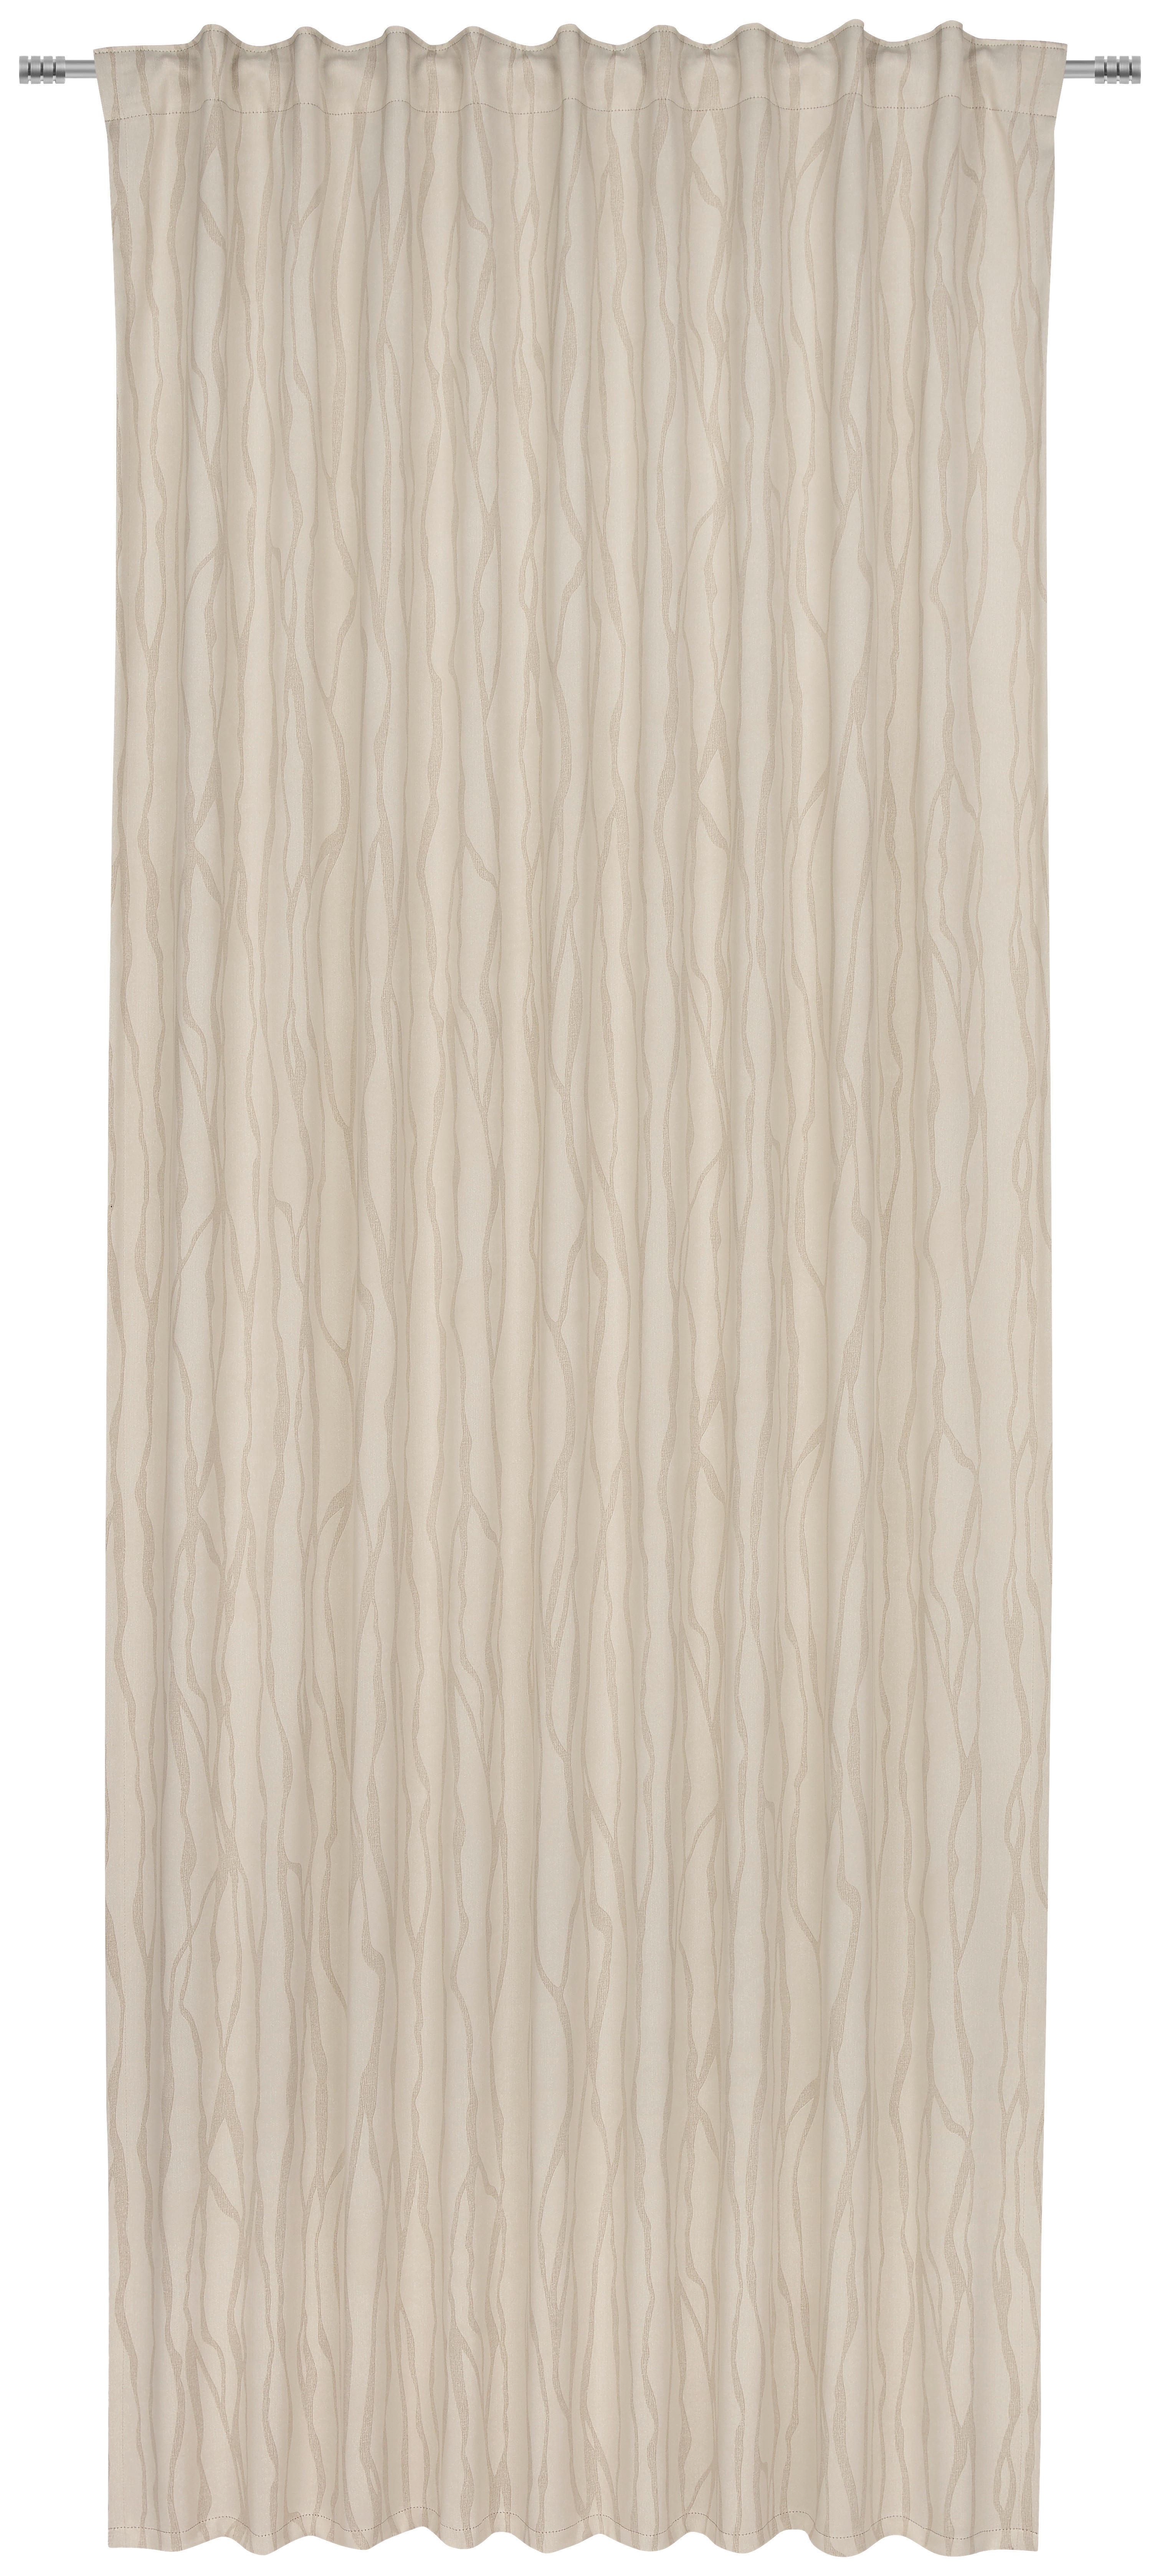 GARDINLÄNGD mörkläggning  - beige, Klassisk, textil (140/245cm) - Esposa